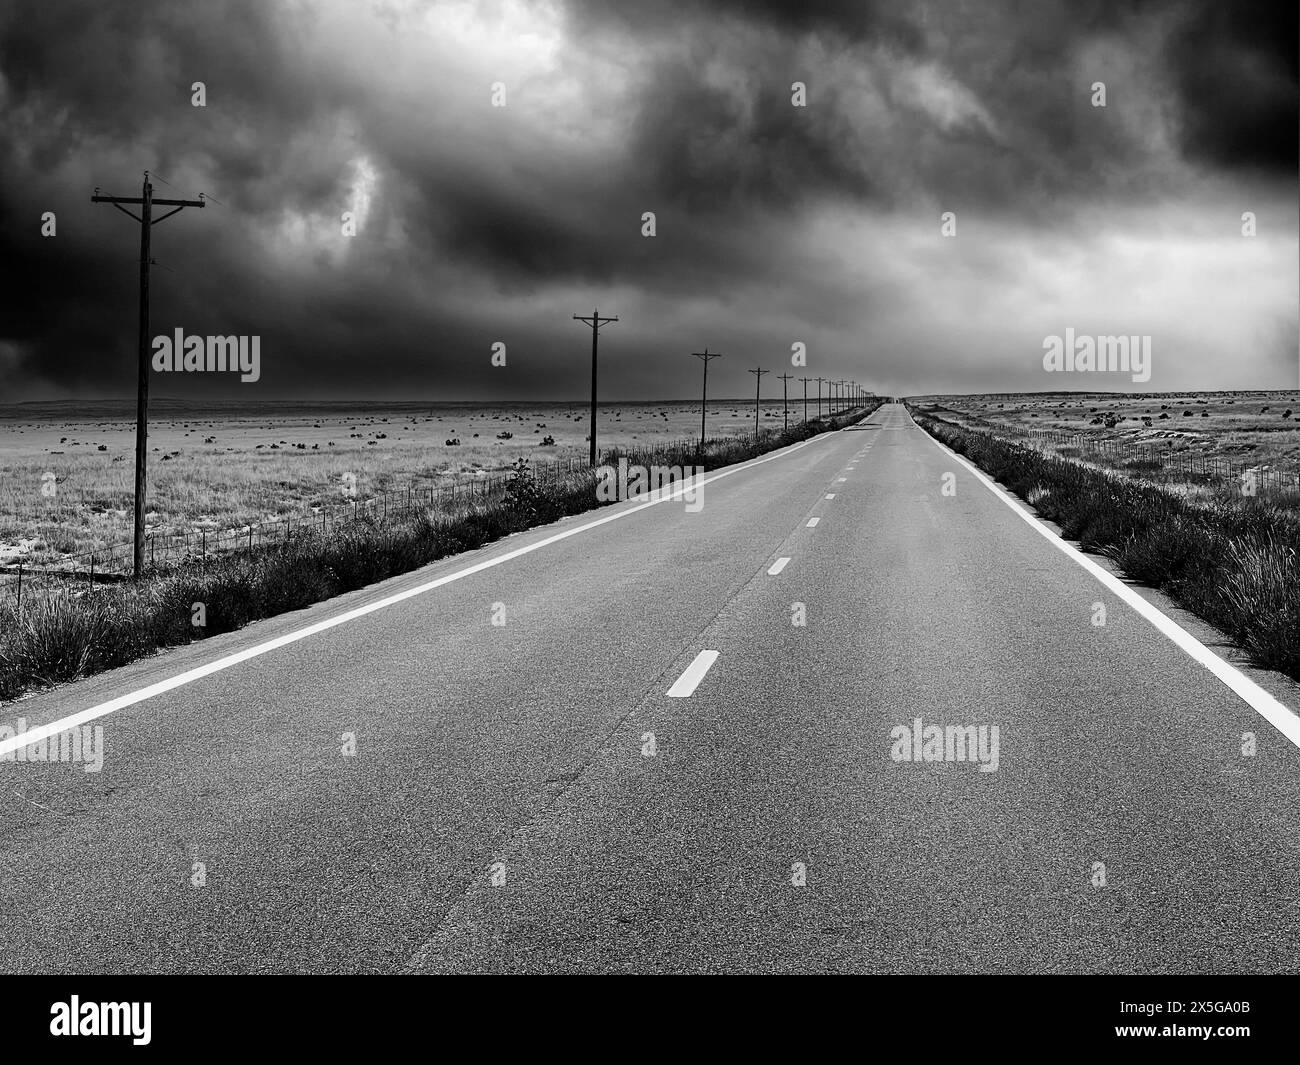 Un paesaggio bianco e nero che mostra una strada di campagna a due corsie vuota che si estende in lontananza con nuvole di tempesta in avvicinamento. Foto Stock